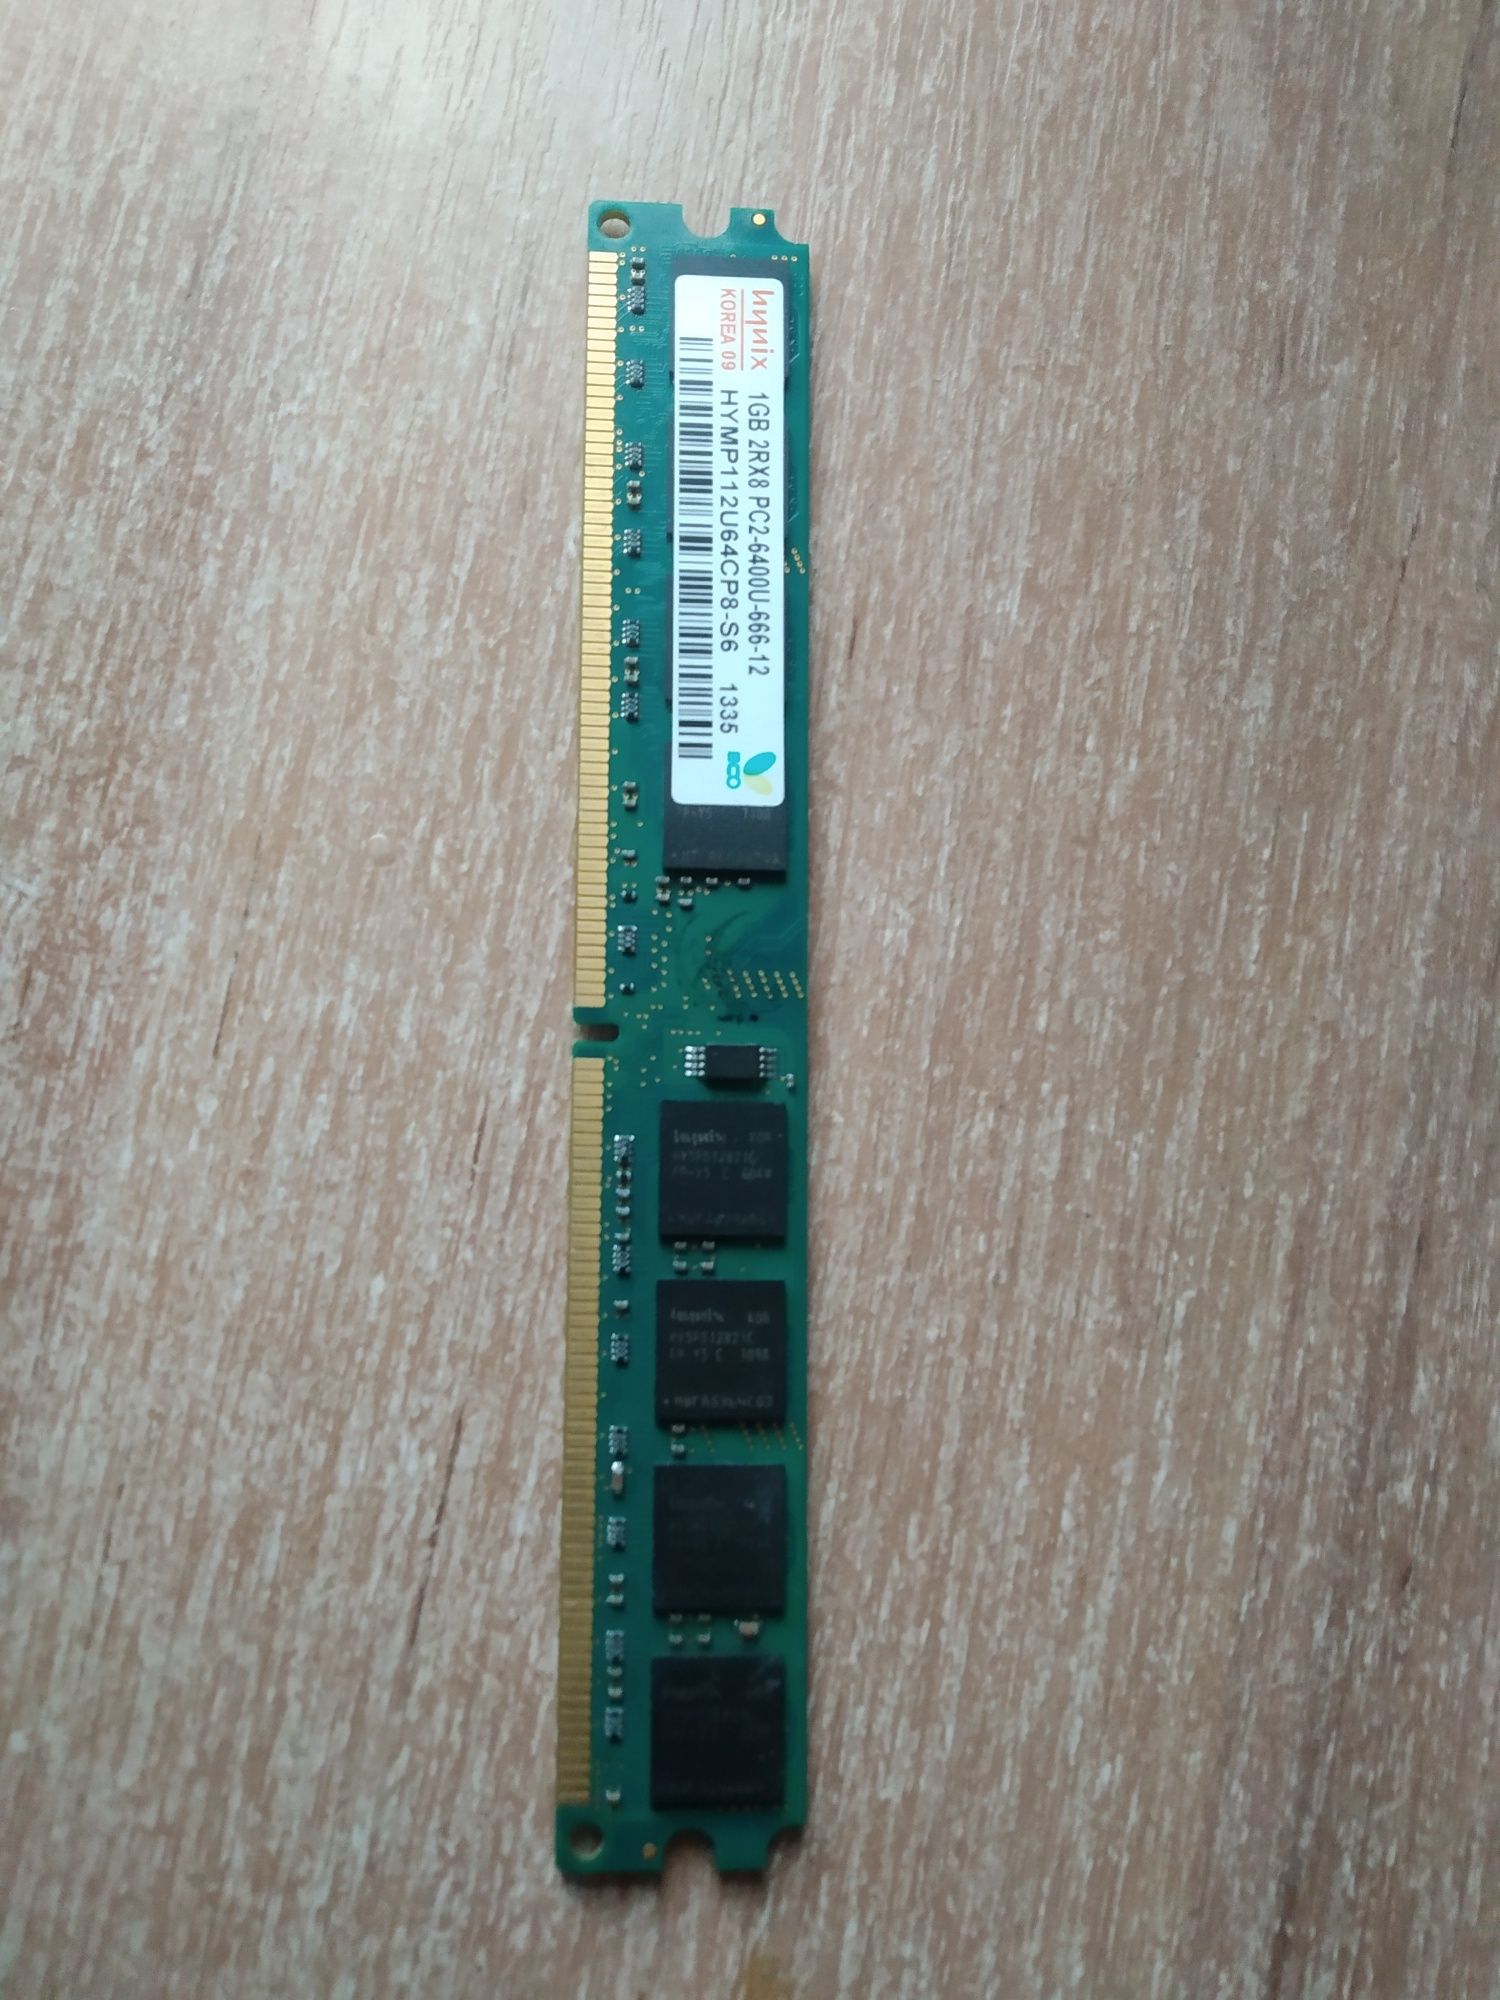 Продам оперативну пам'ятьDDR2 на 1 ГБ.